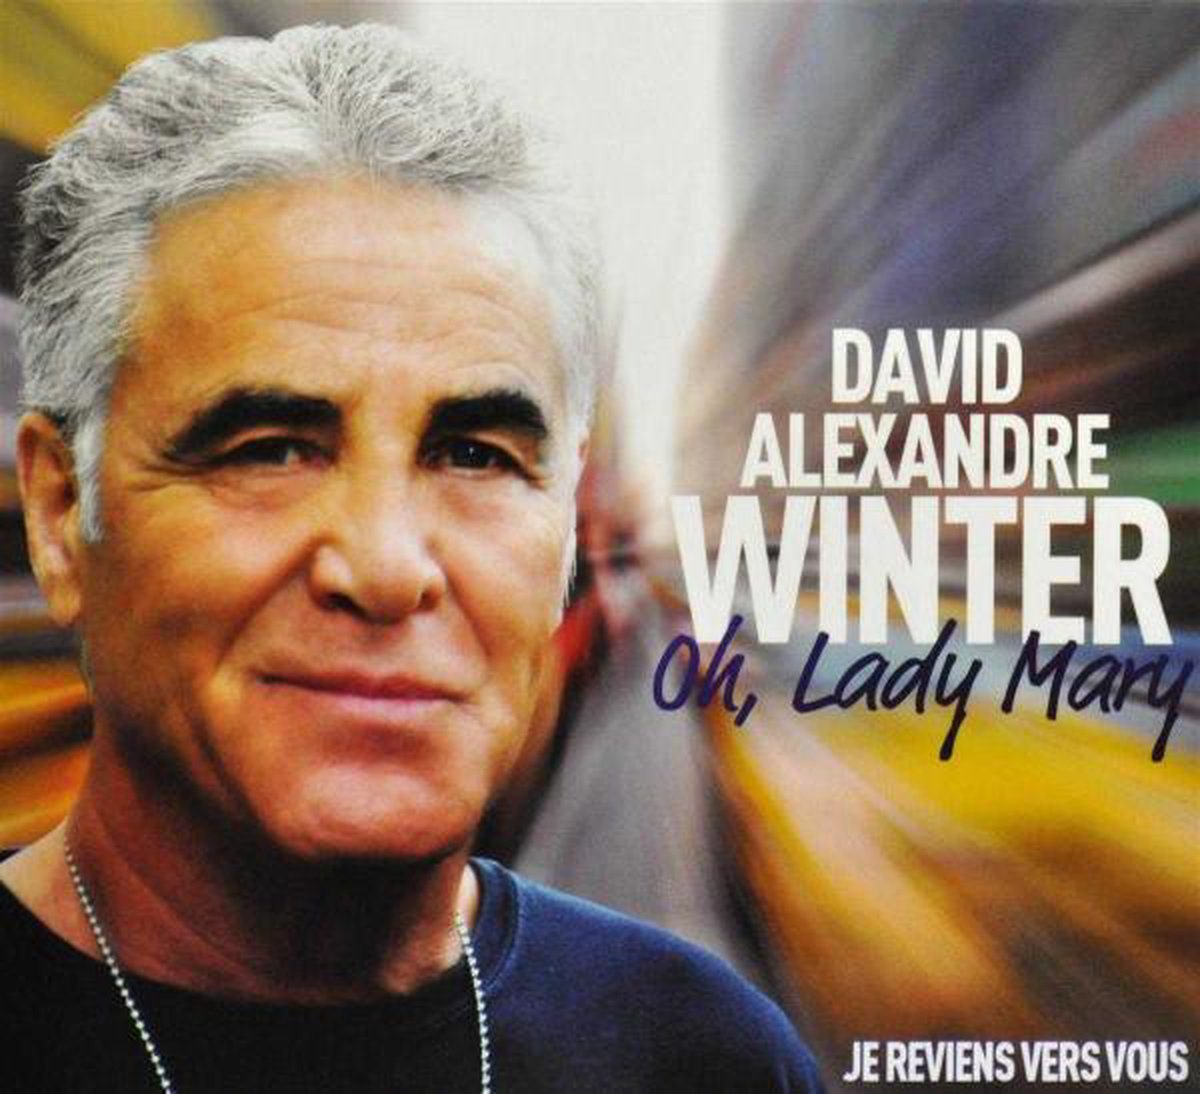 David Alexandre Winter - Oh Lady Mary - Davidalexandre Winter